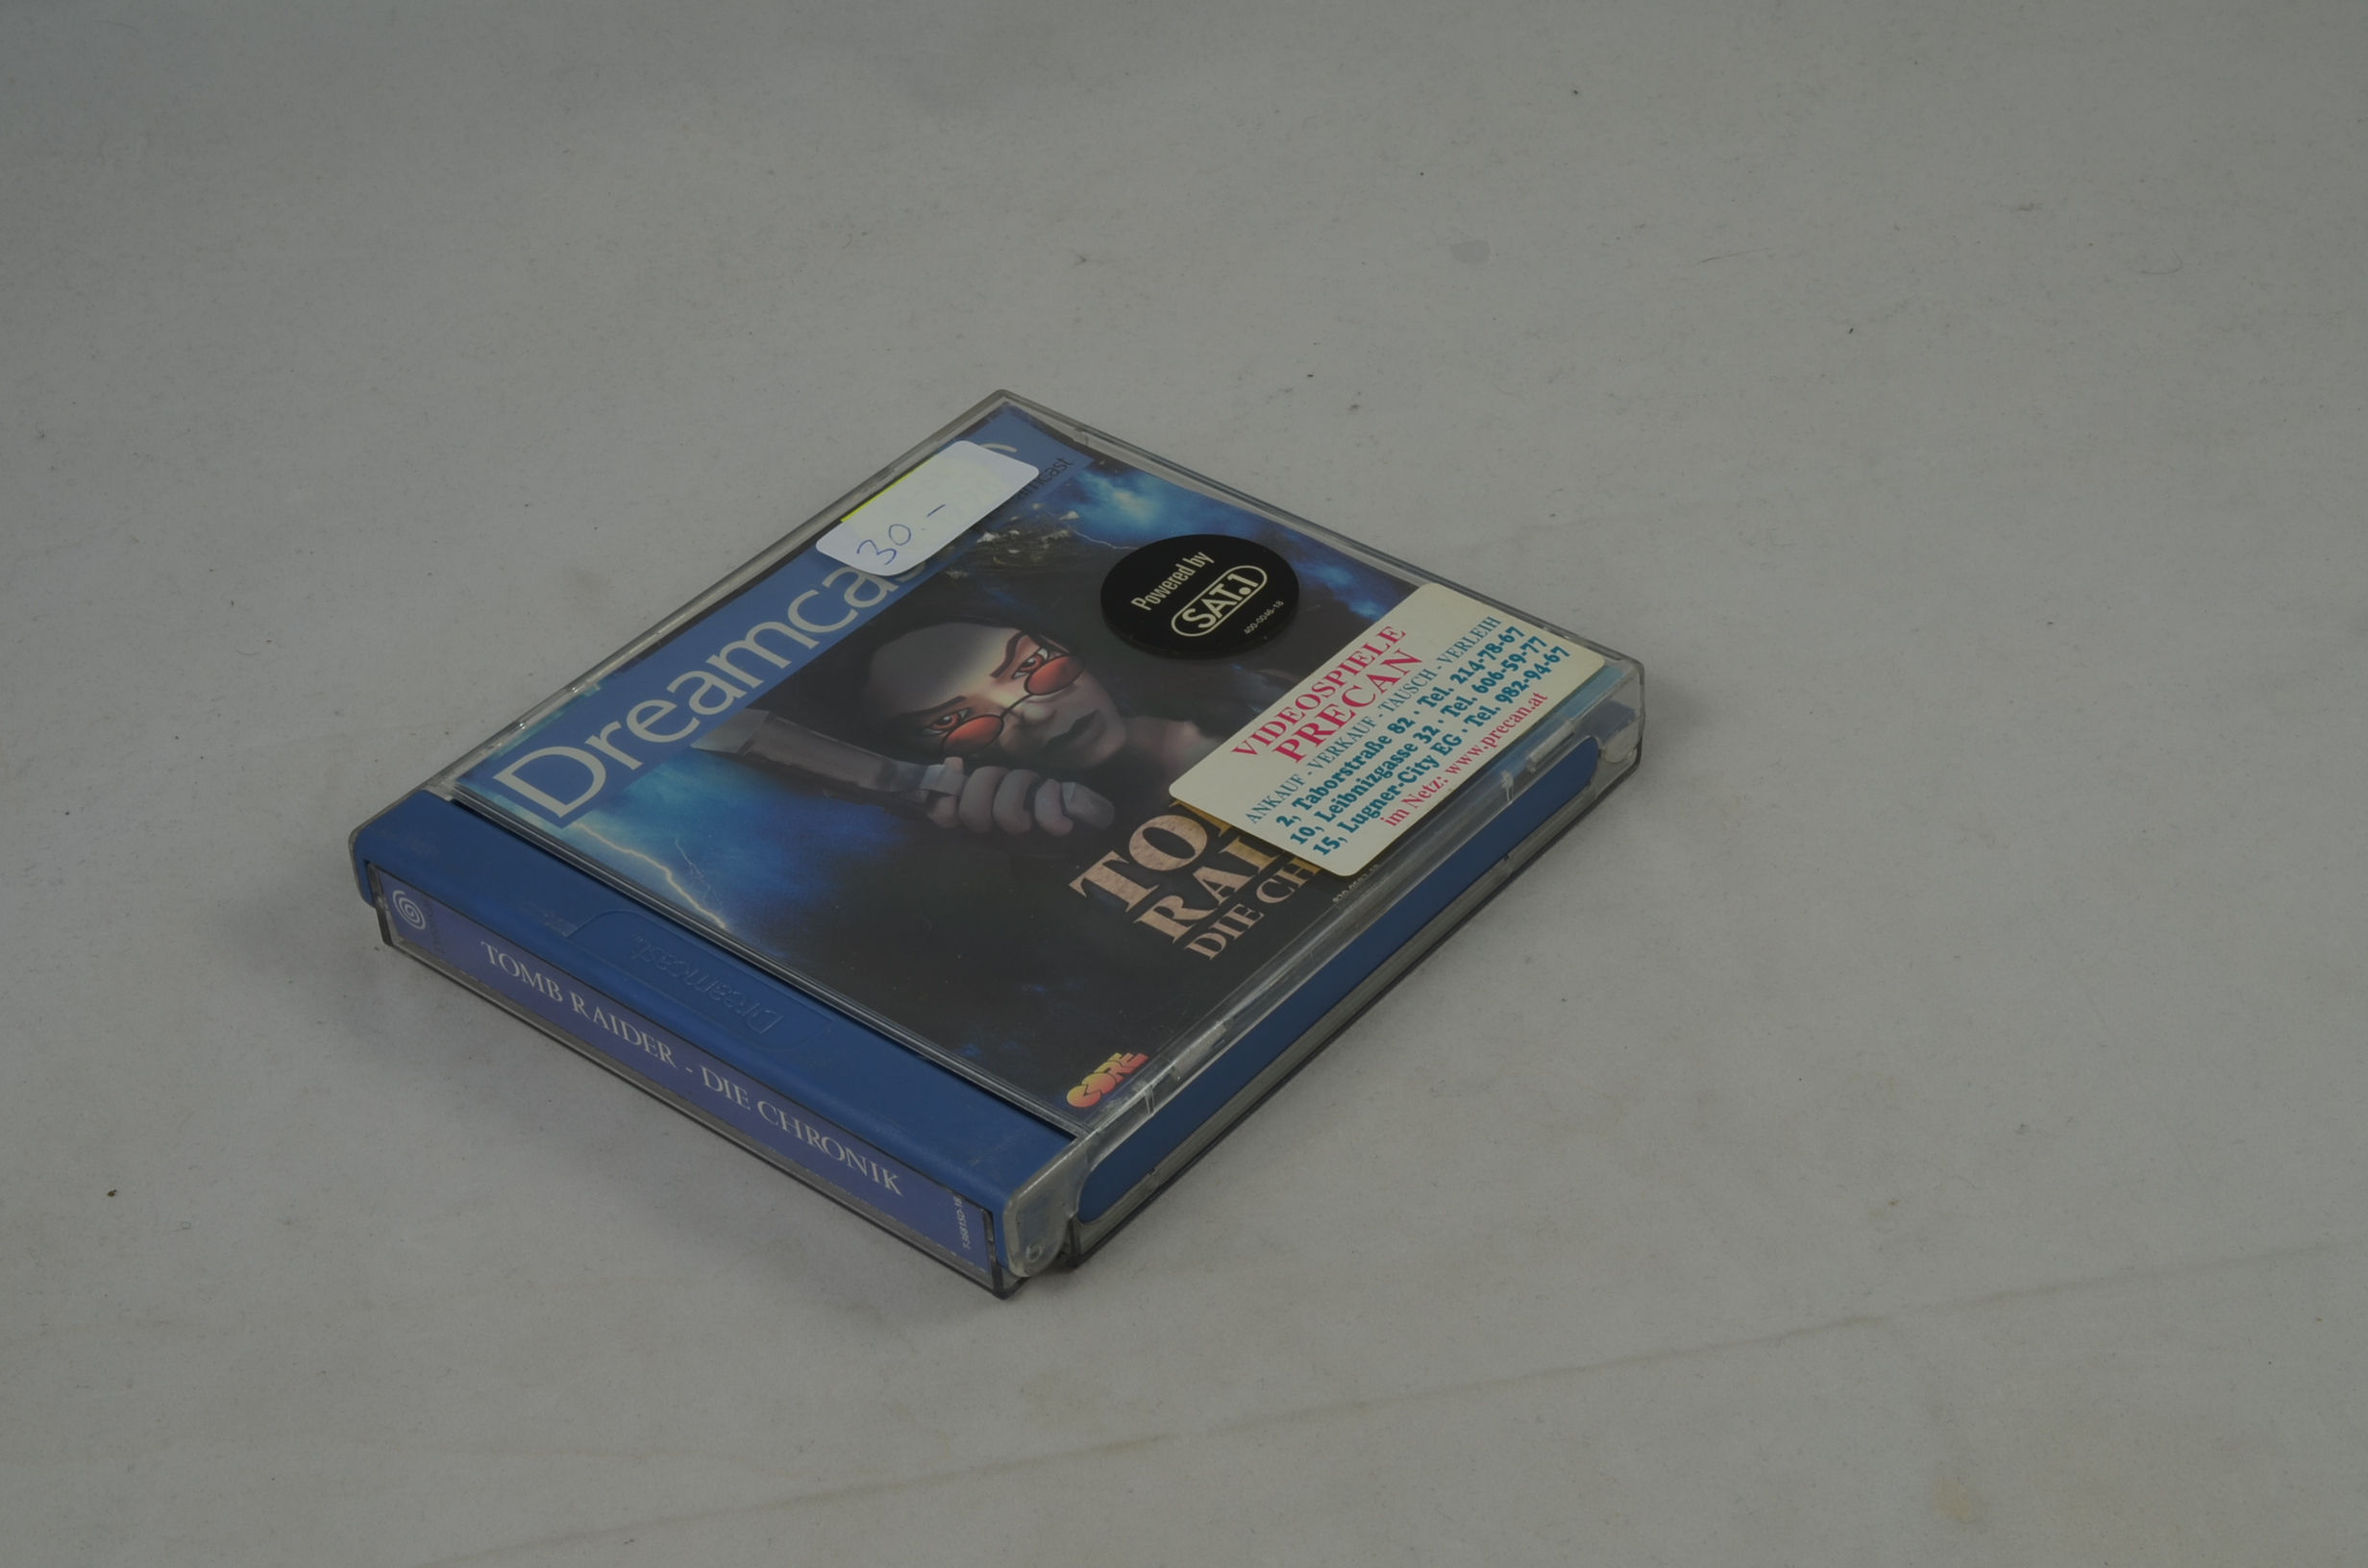 Produktbild von Tomb Raider: Die Chronik Dreamcast Spiel CIB (sehr gut)